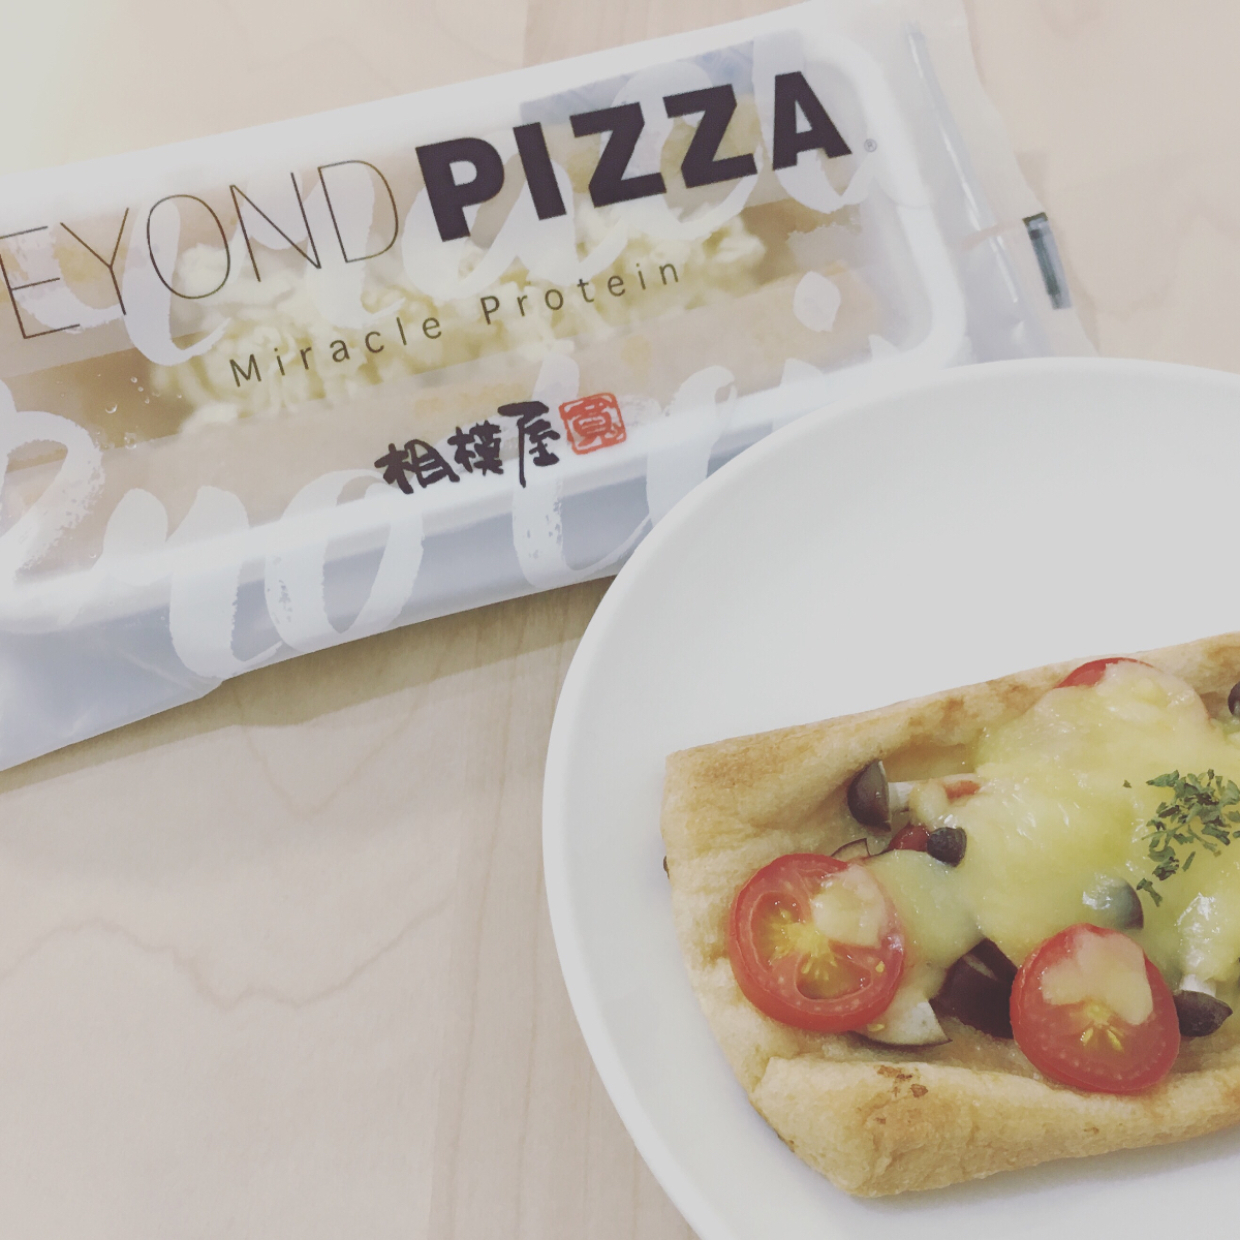  豆腐でできた奇跡のピザ「BEYOND PIZZA」に相模屋の本気をみた 